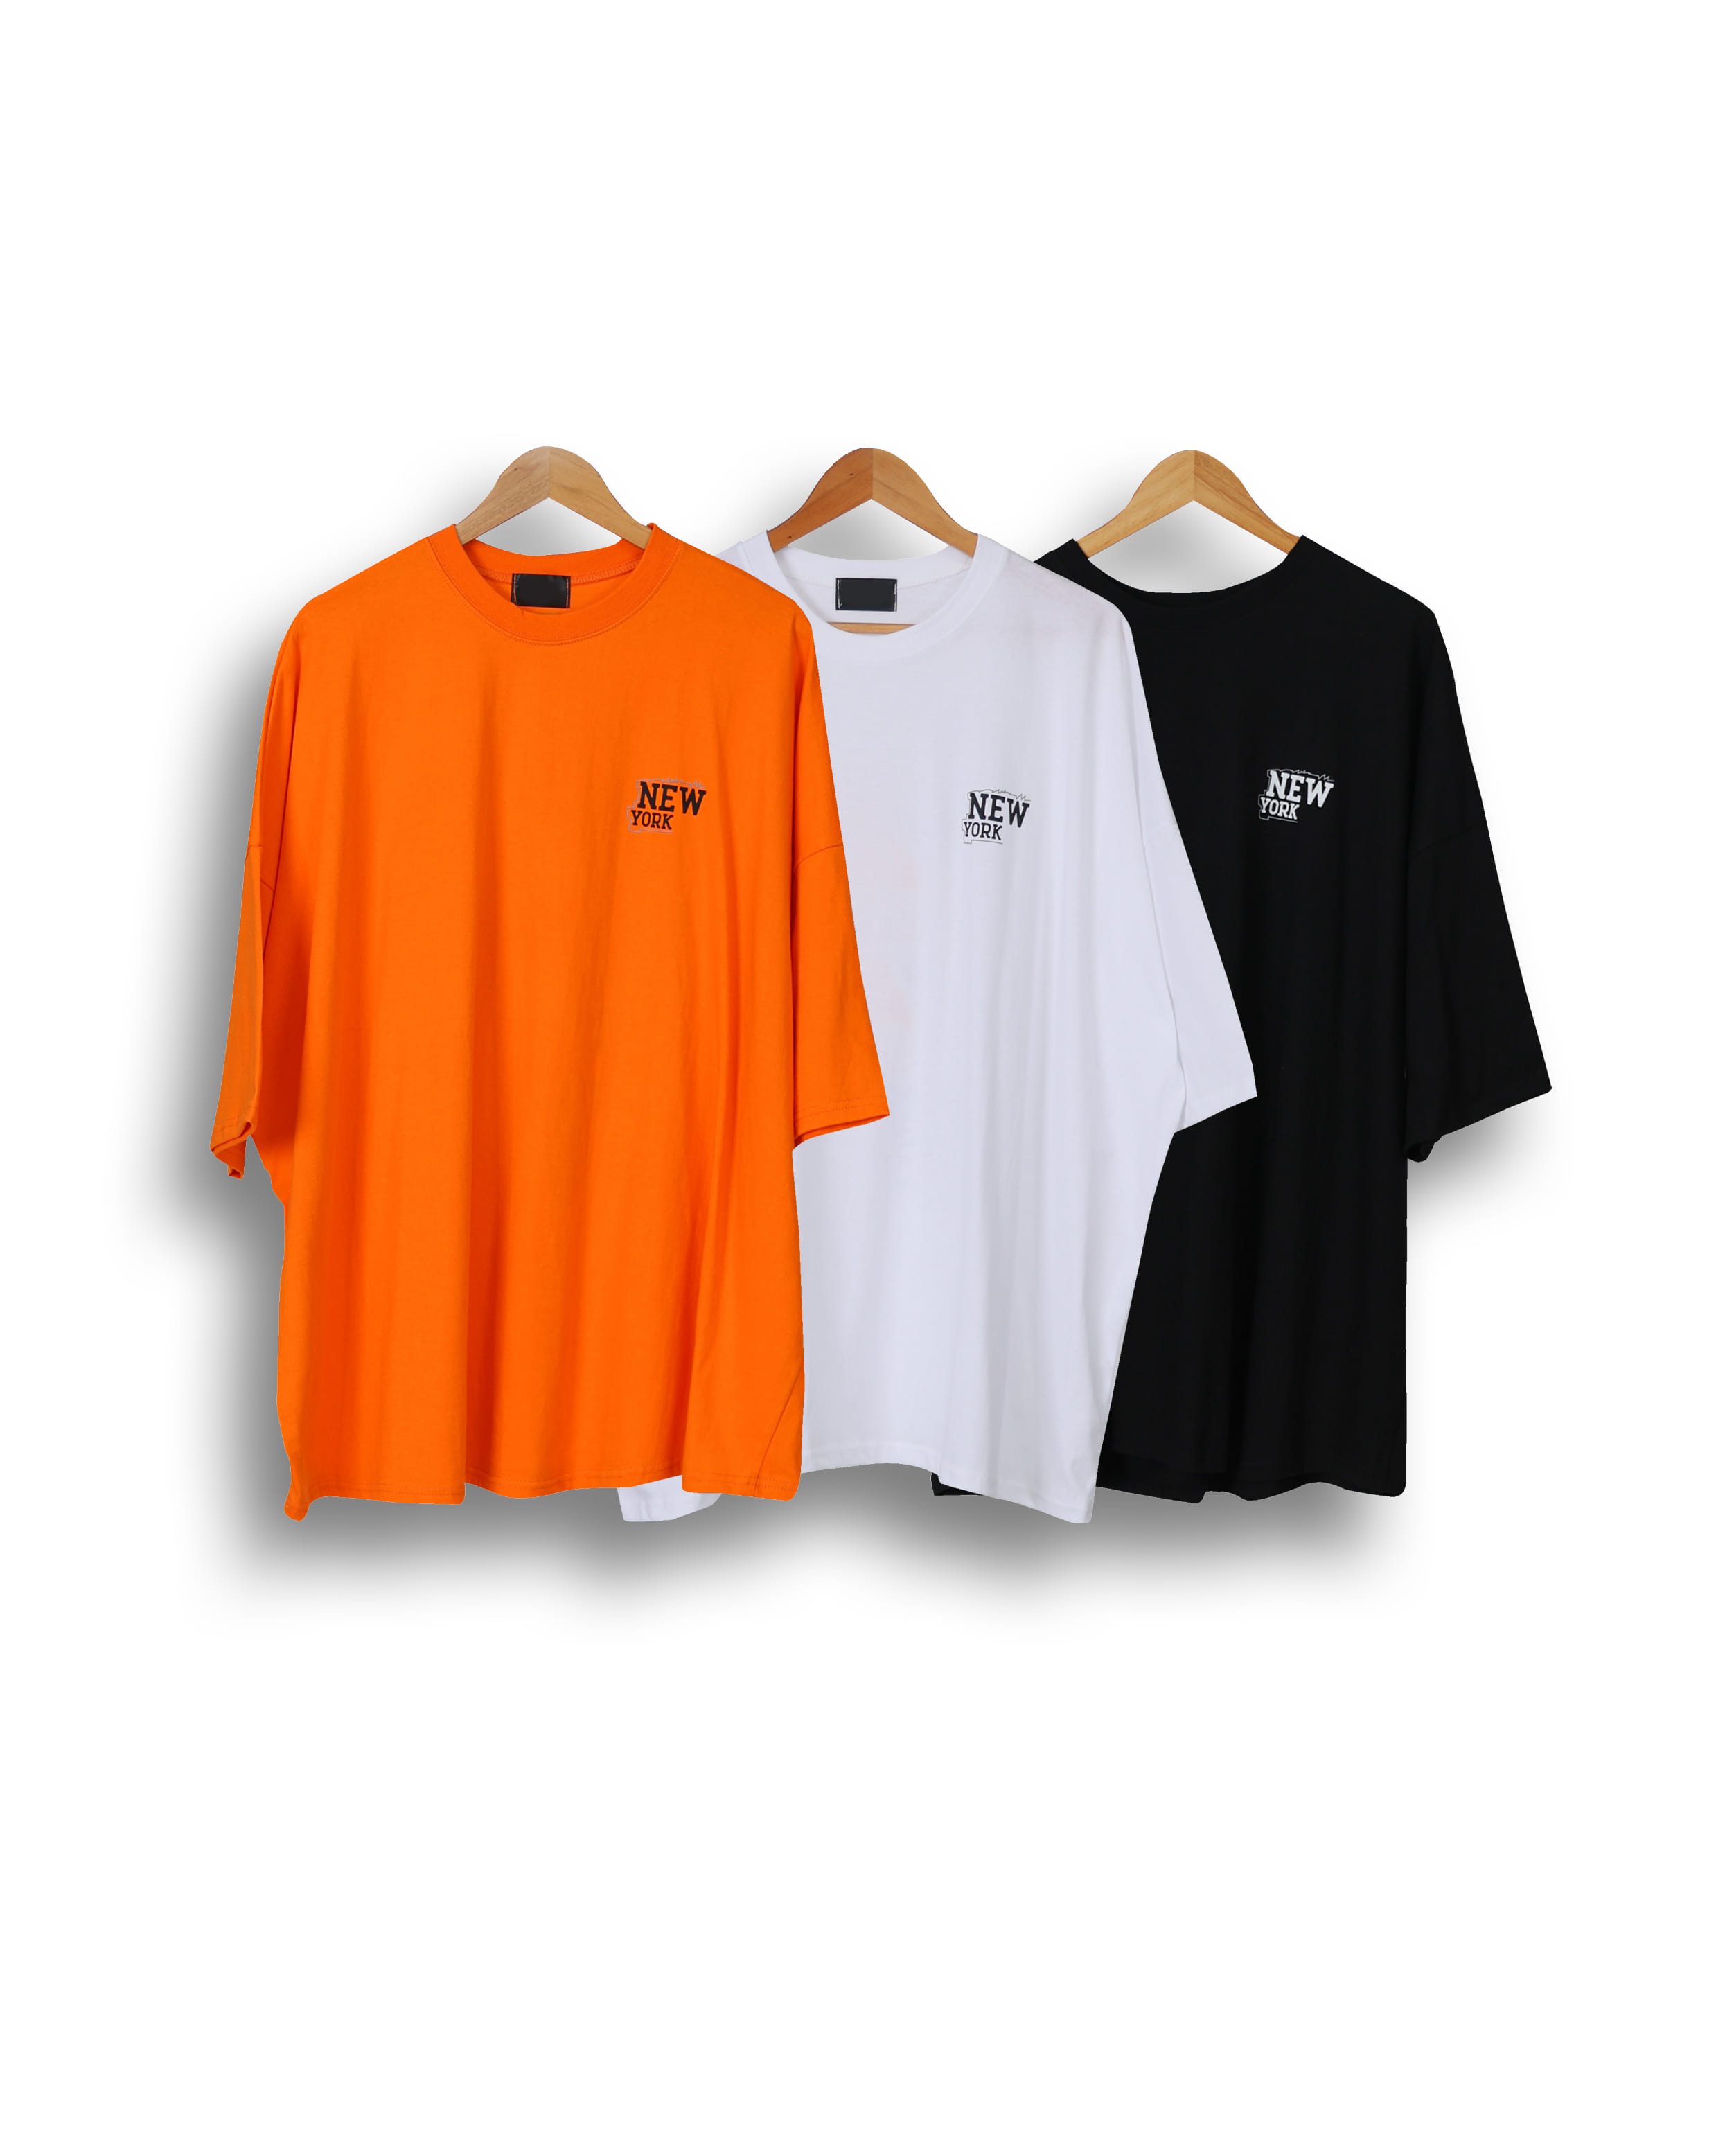 TAKE THUNDER Printed T Shirts (Black/Orange/White)